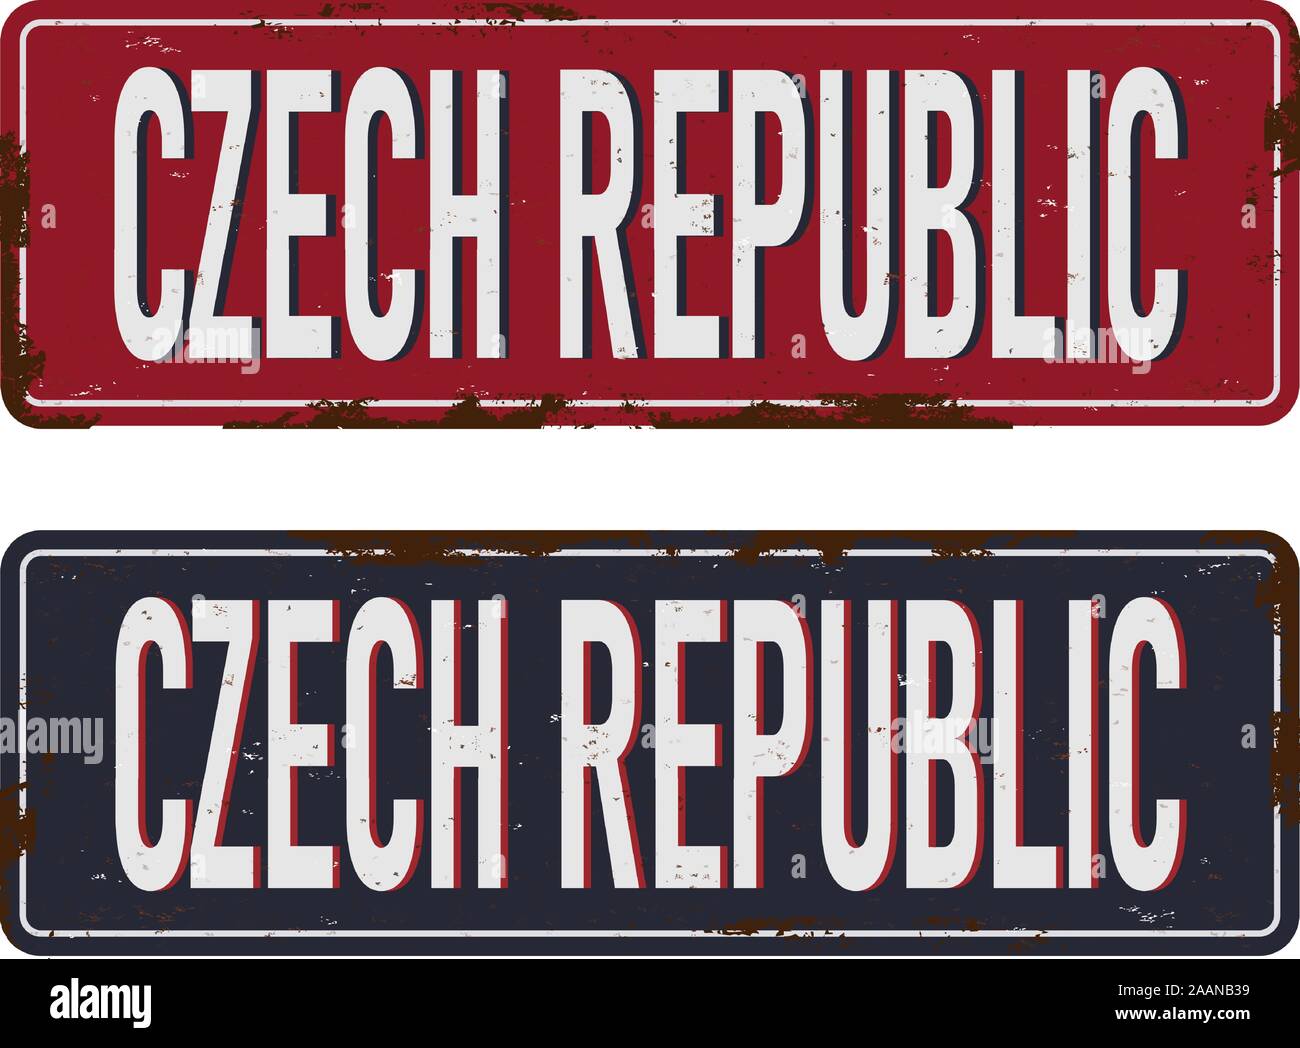 République tchèque texte distressed grunge rusty metal look. Illustration de Vecteur